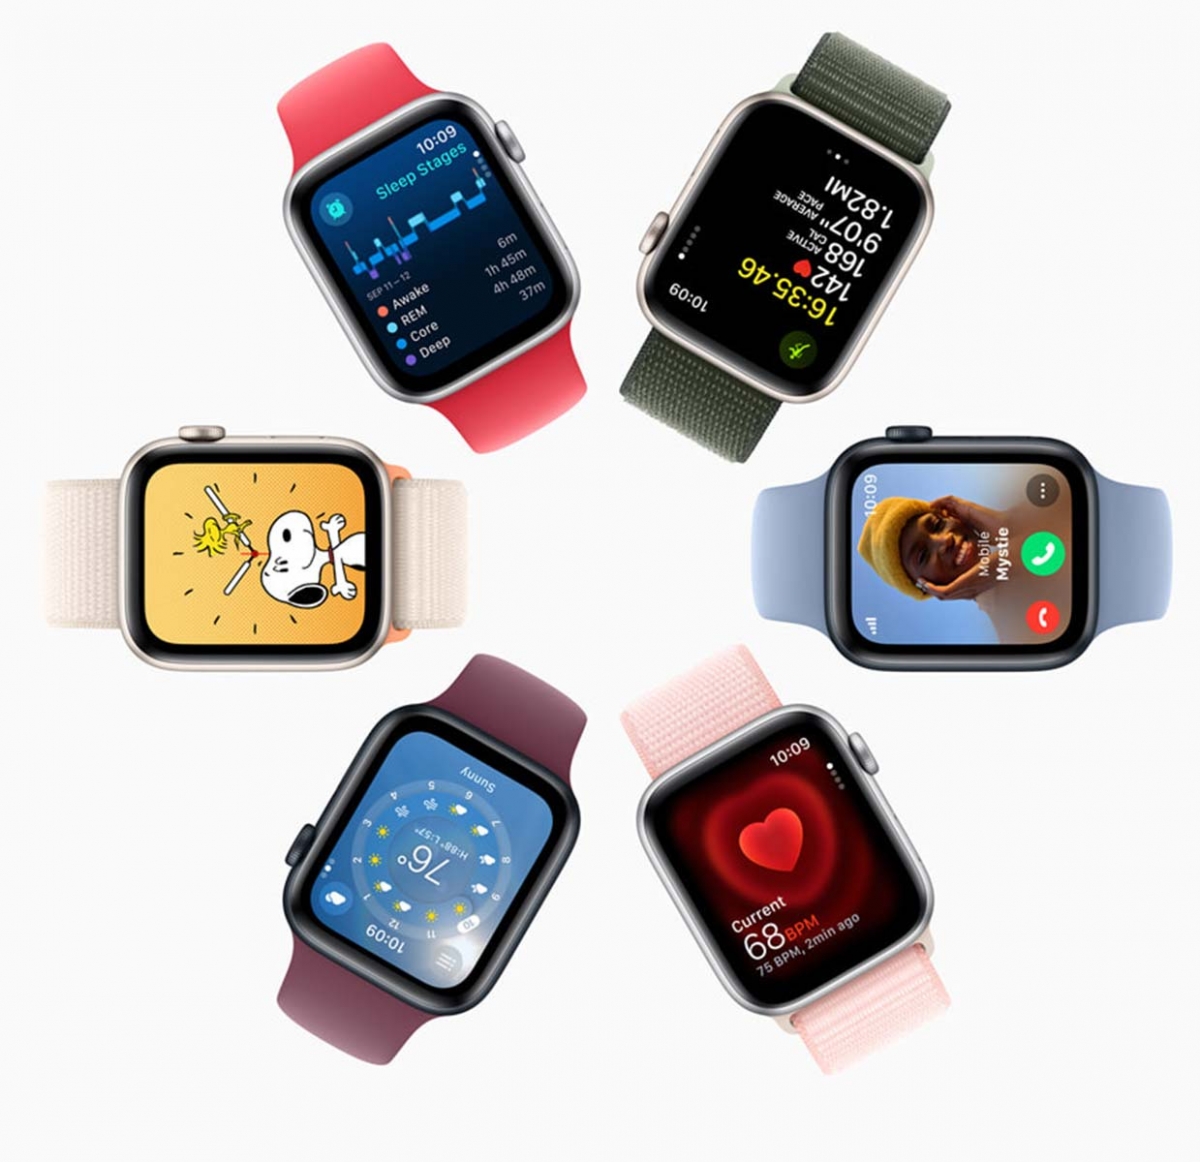 Las mejores ofertas en Apple Watch Ultra 2